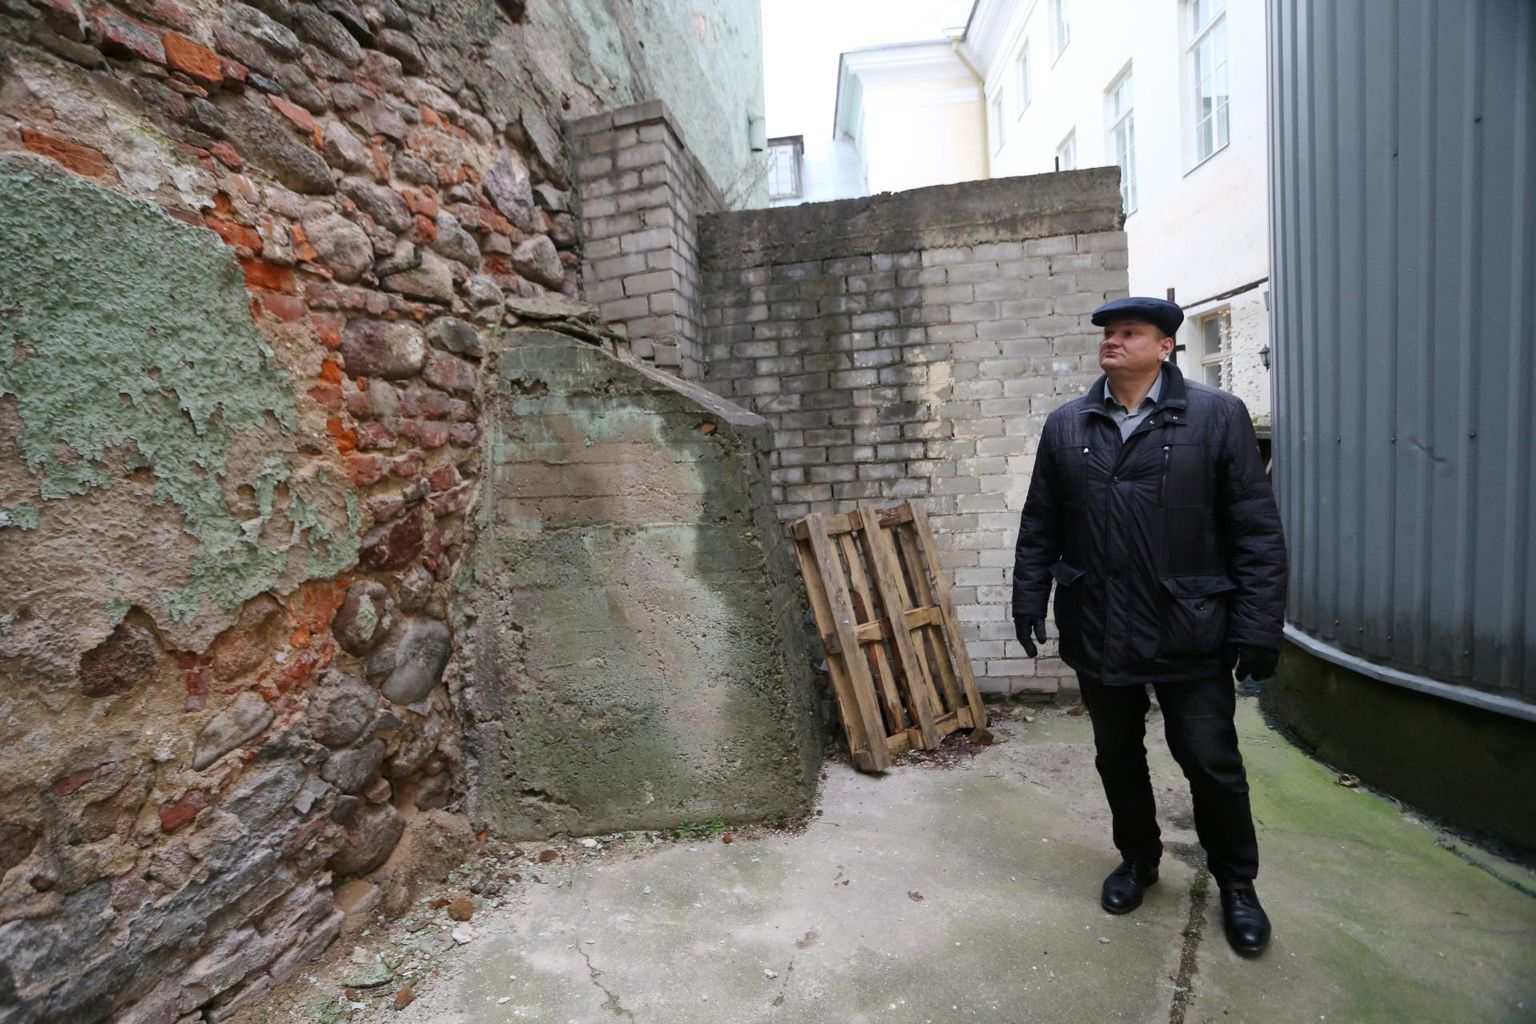 Raekoja plats 14 maja müür on ohtlikult vajunud, selgitas Tartu linnavarade osakonna juhataja Kunnar Jürgenson.